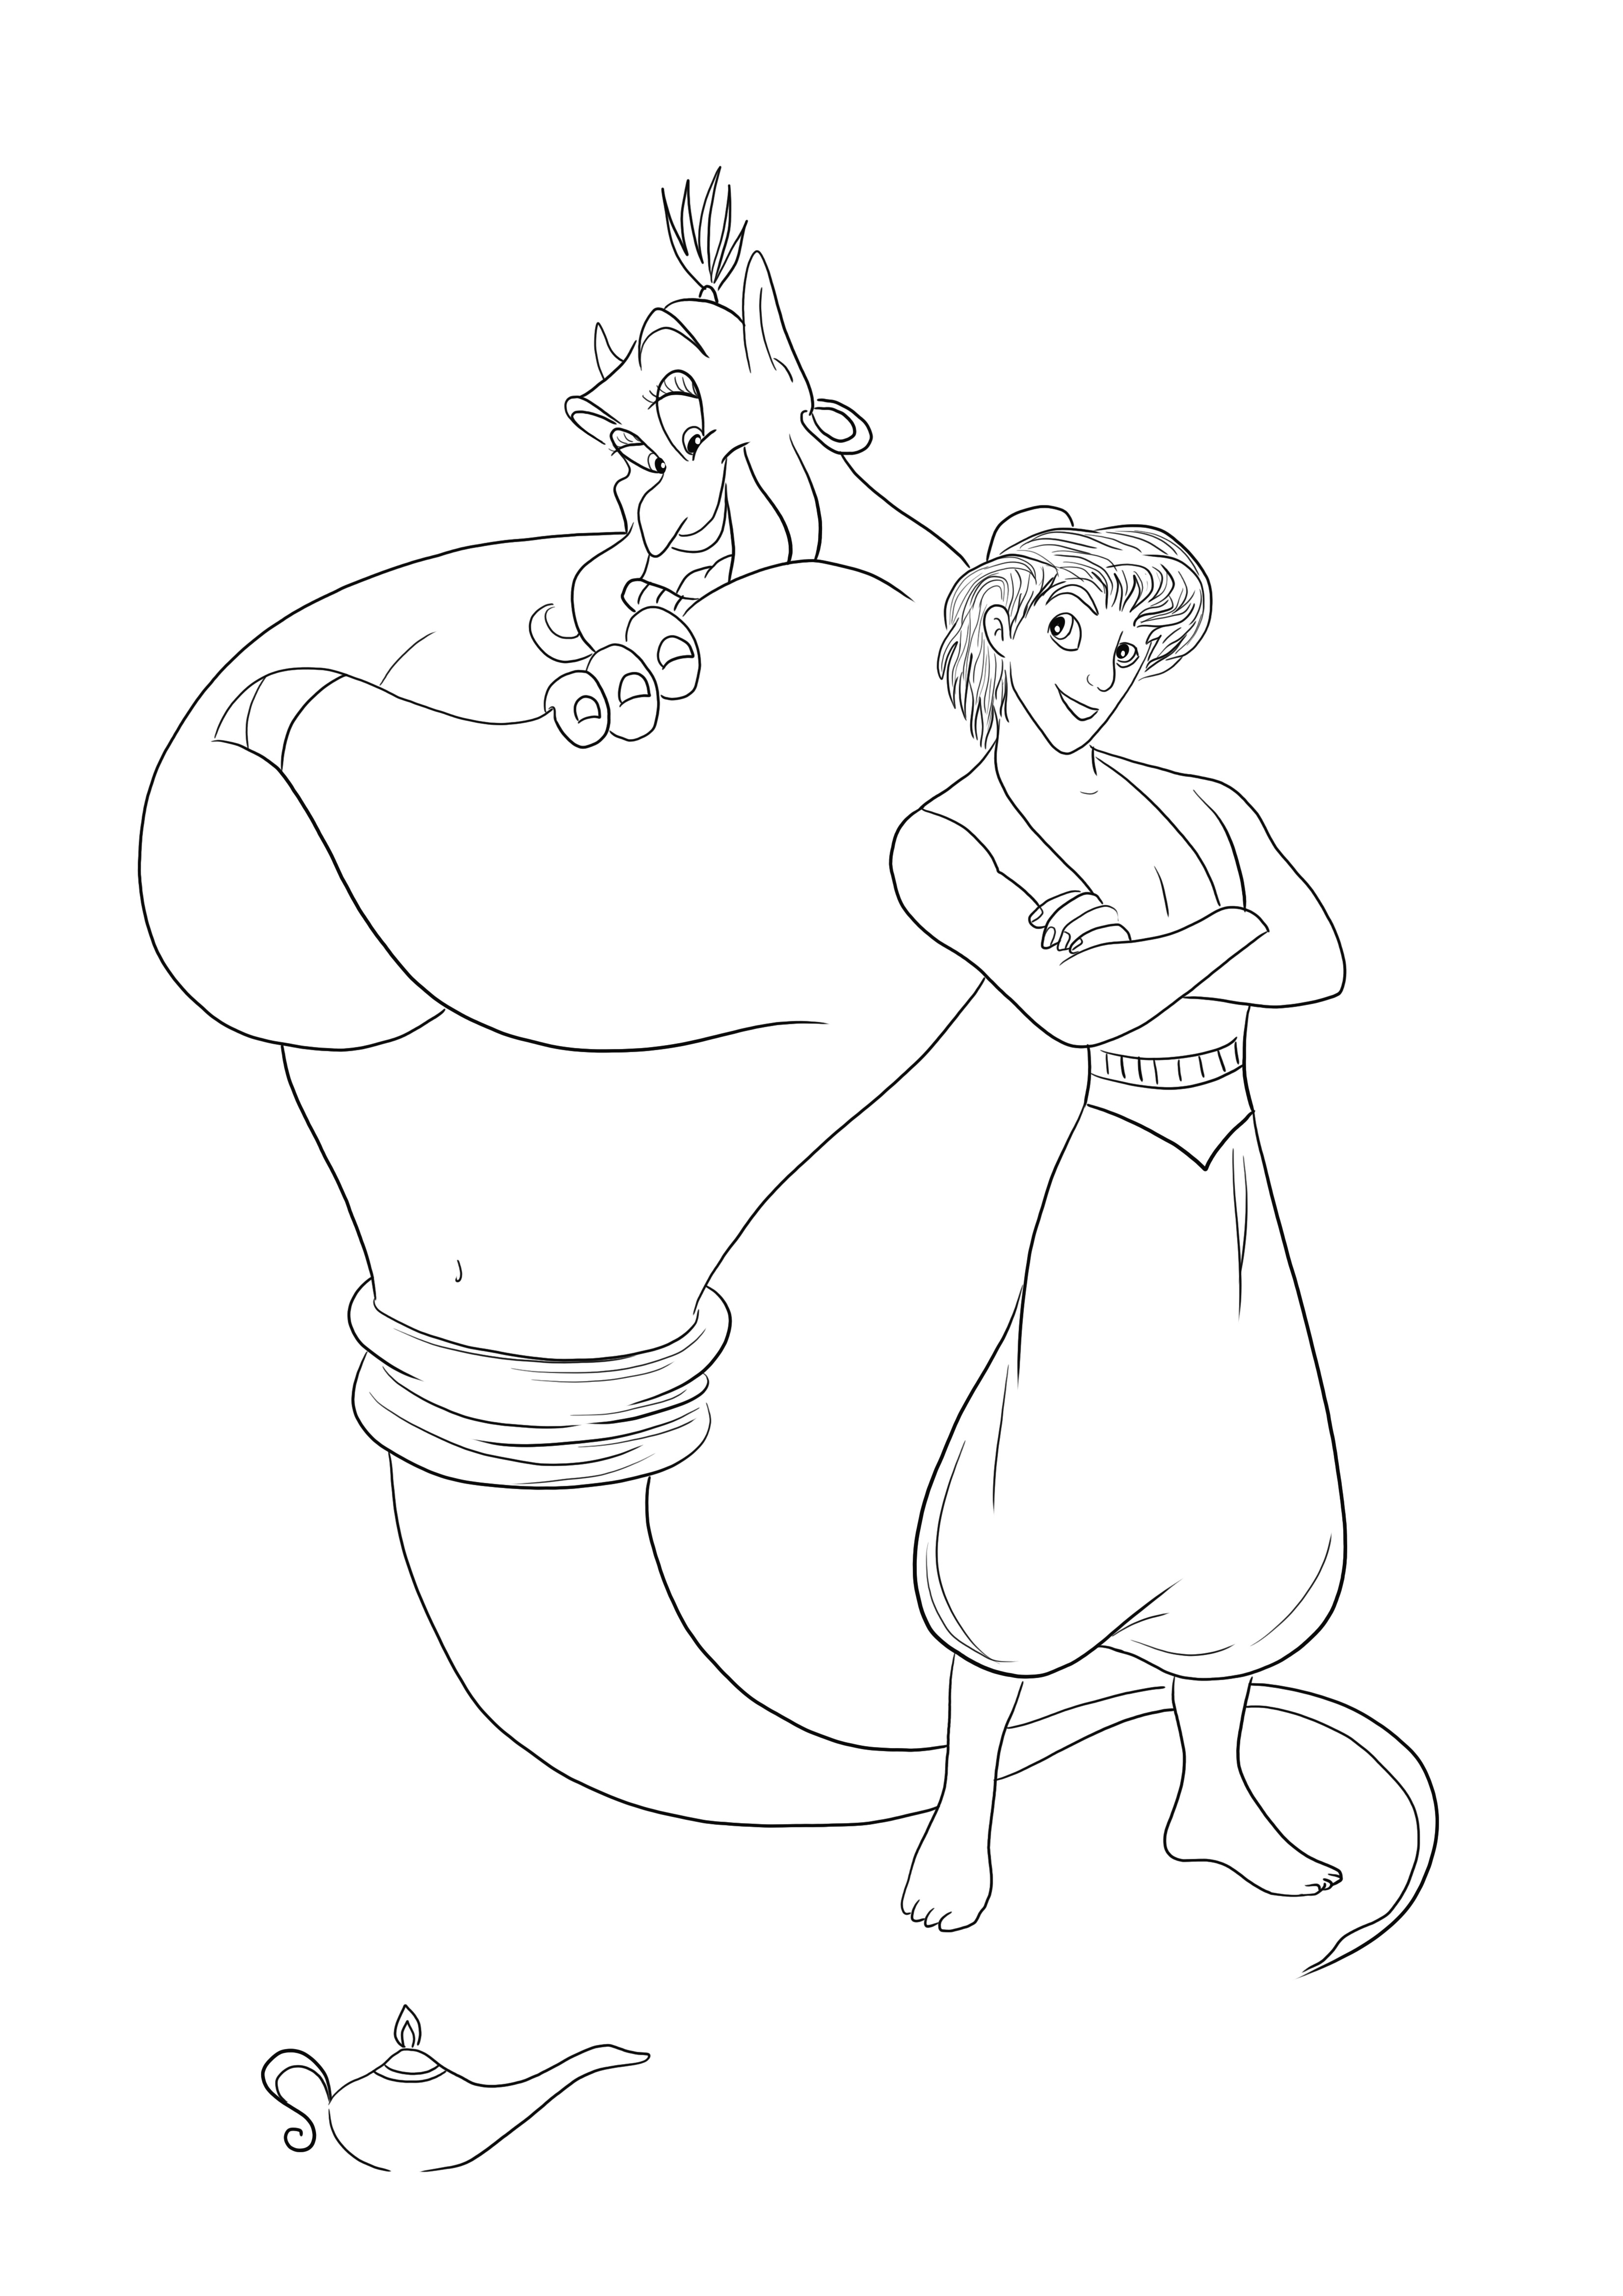 Genio e Aladdin stampabili gratuitamente per colorare e divertirsi allo stesso tempo